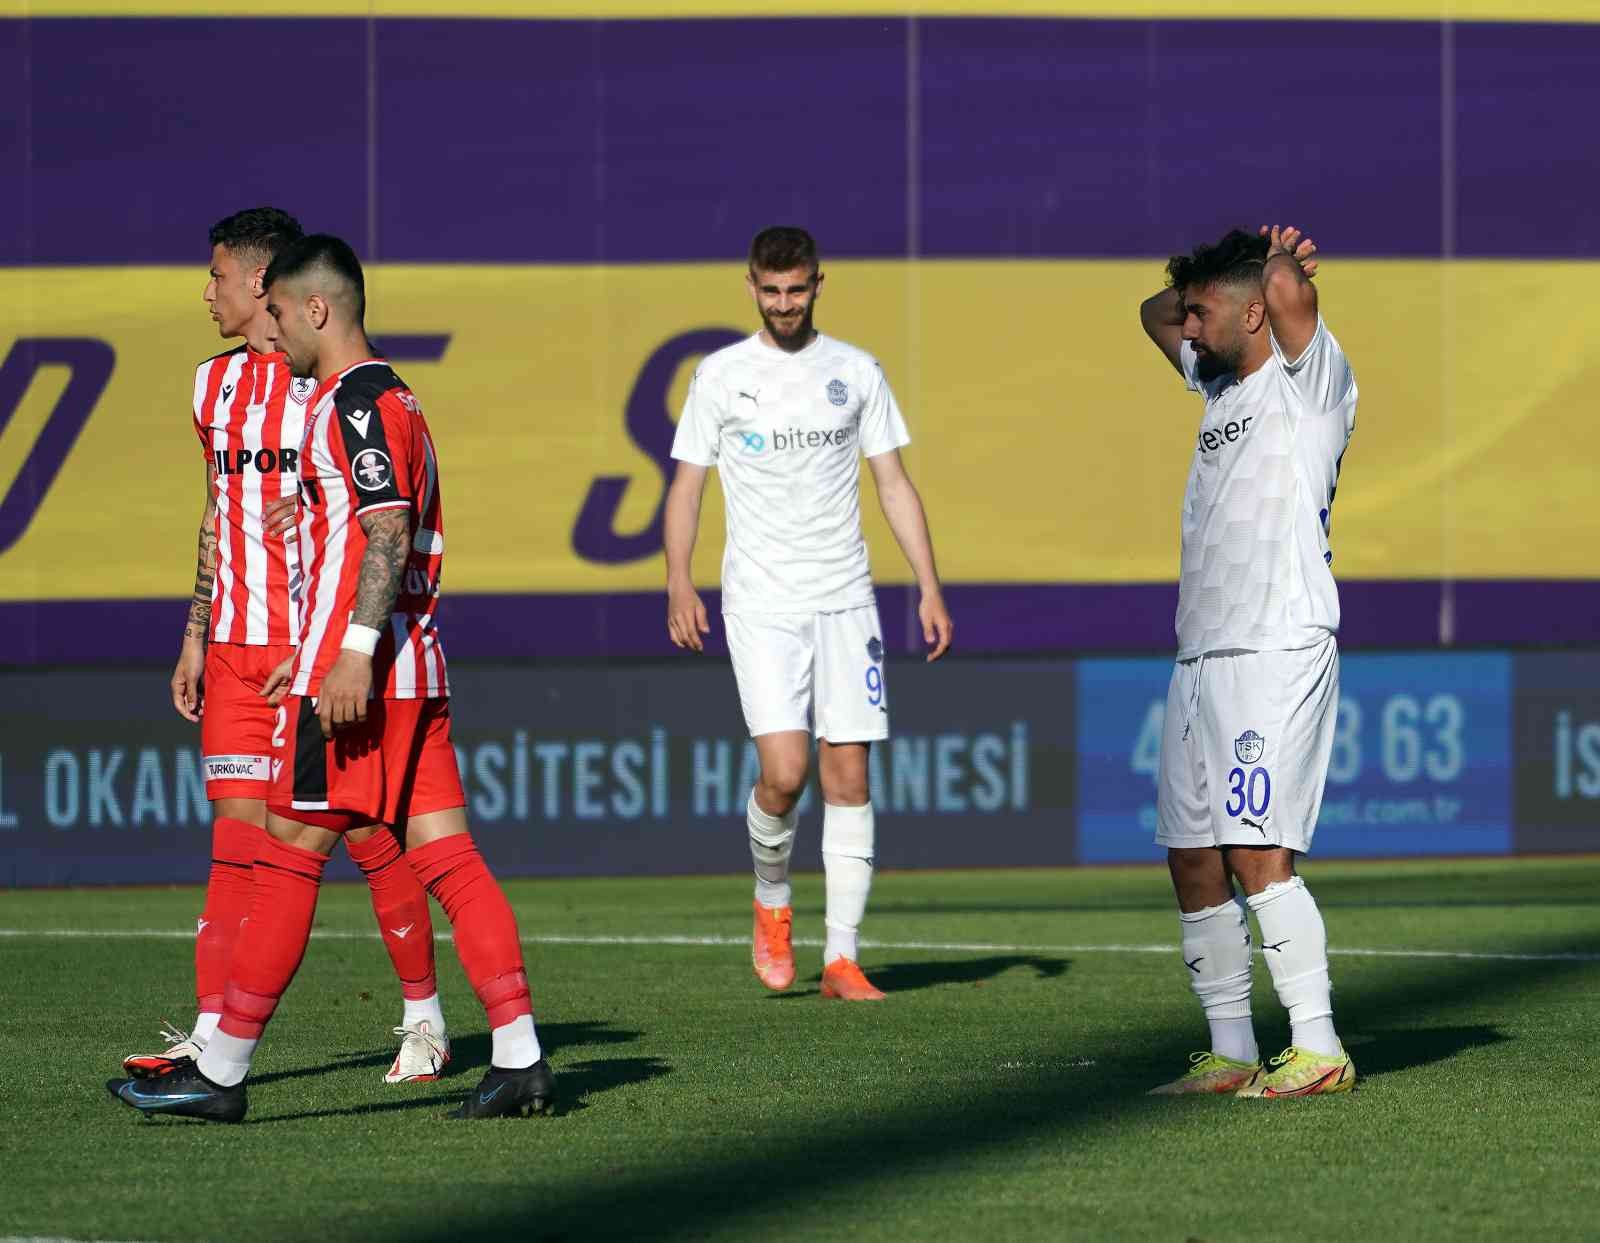 Spor Toto 1. Lig’in son haftasında Tuzlaspor, sahasında Samsunspor’a 4-2’lik skorla mağlup oldu. Maçtan dakikalar 5. dakikada ceza sahası içi ...